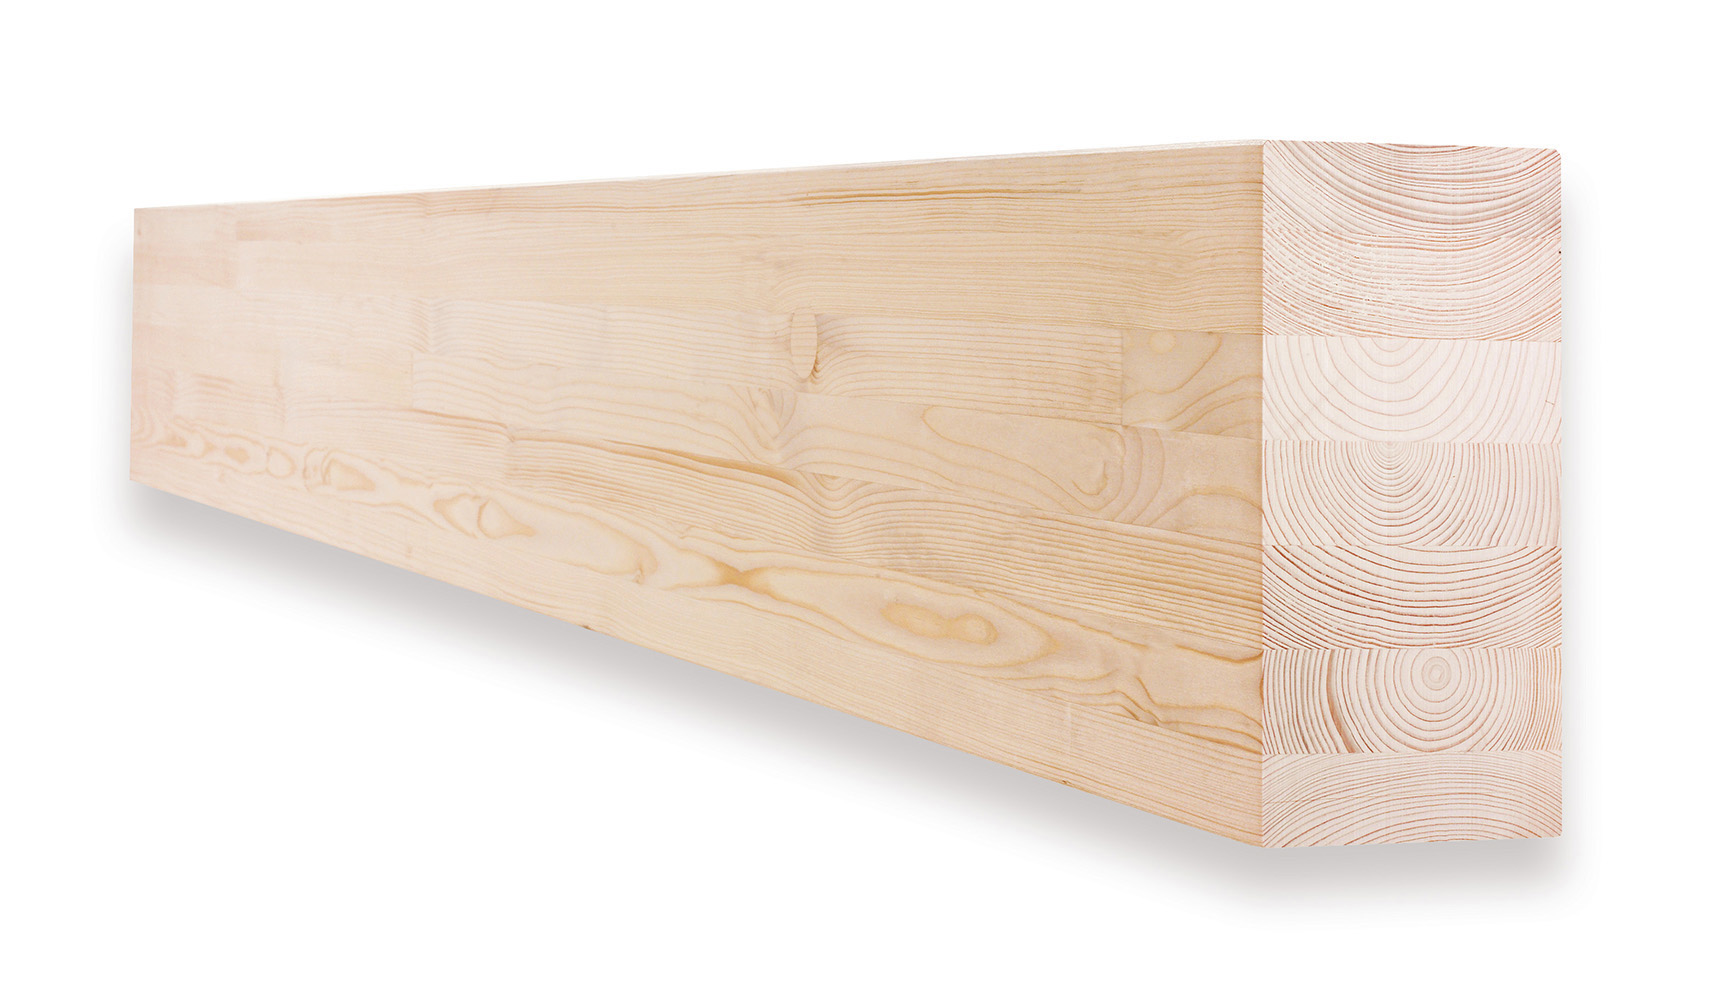 Dřevo lamelové lepené BSH Si 160×320×6 000 mm